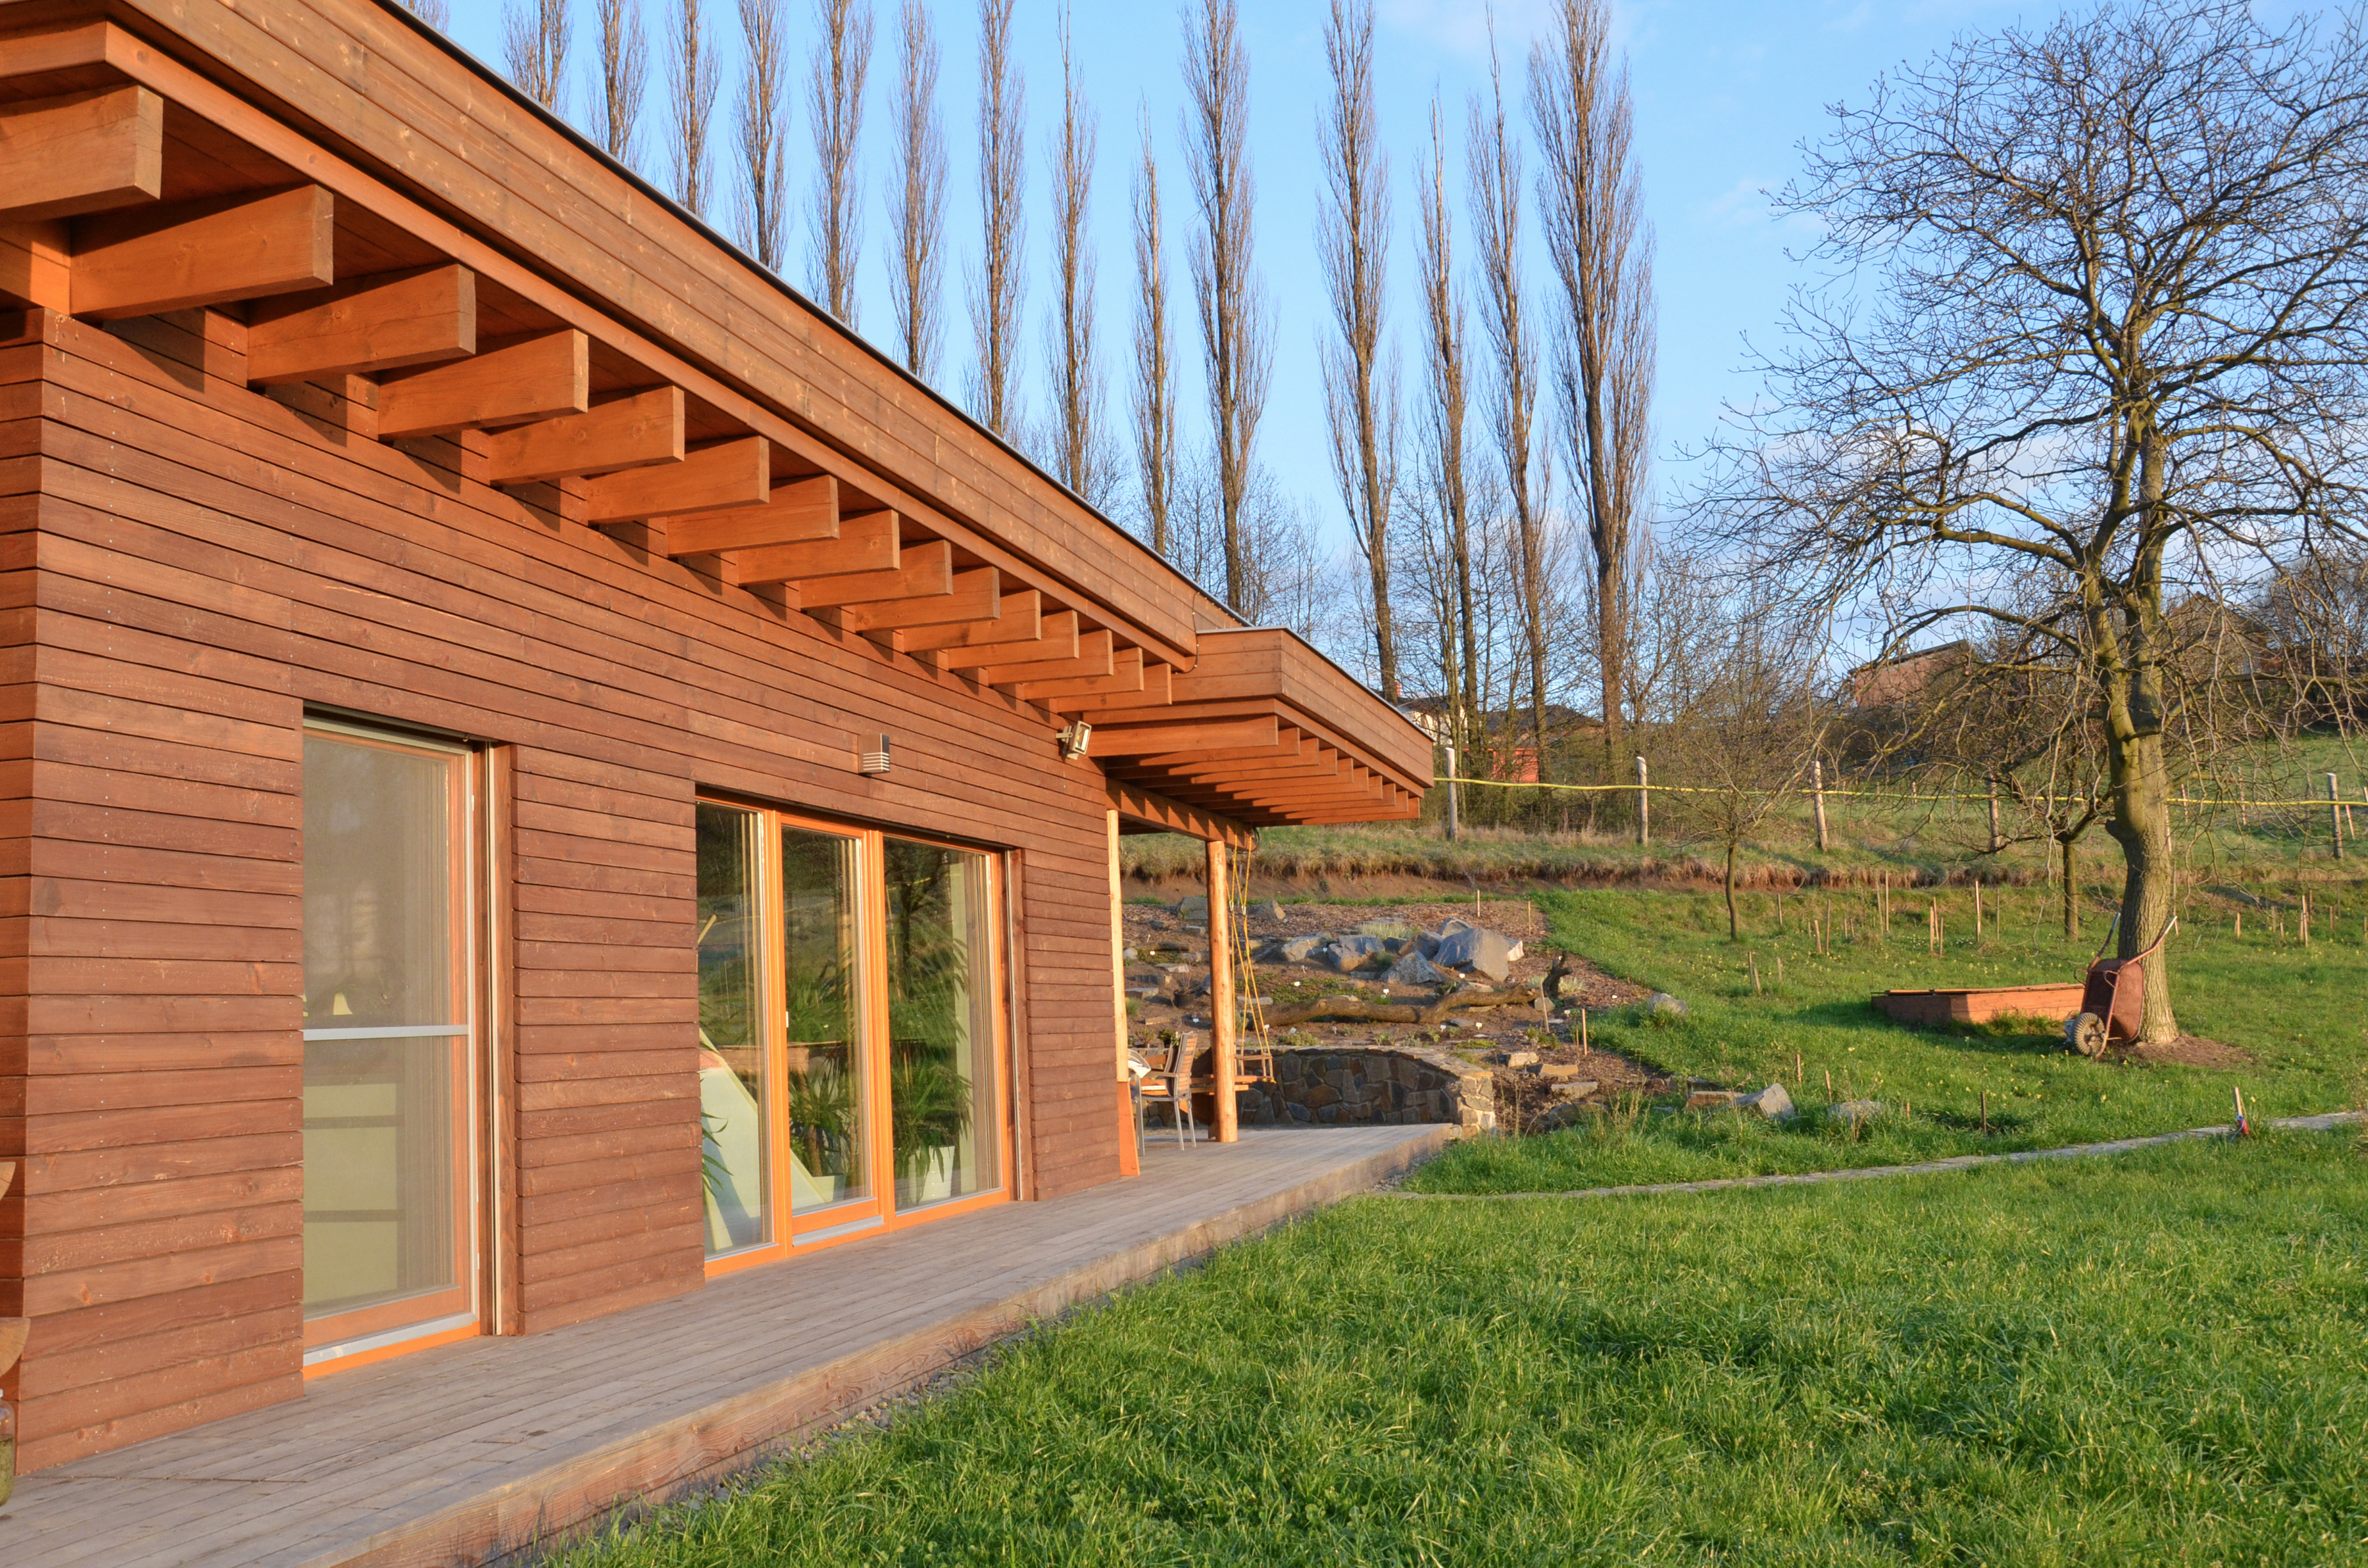 Rodinný dom je navrhnutý ako rámová drevostavba (systém two by four). Všetky nosné konštrukcie sú postavené z drevených hranolov.